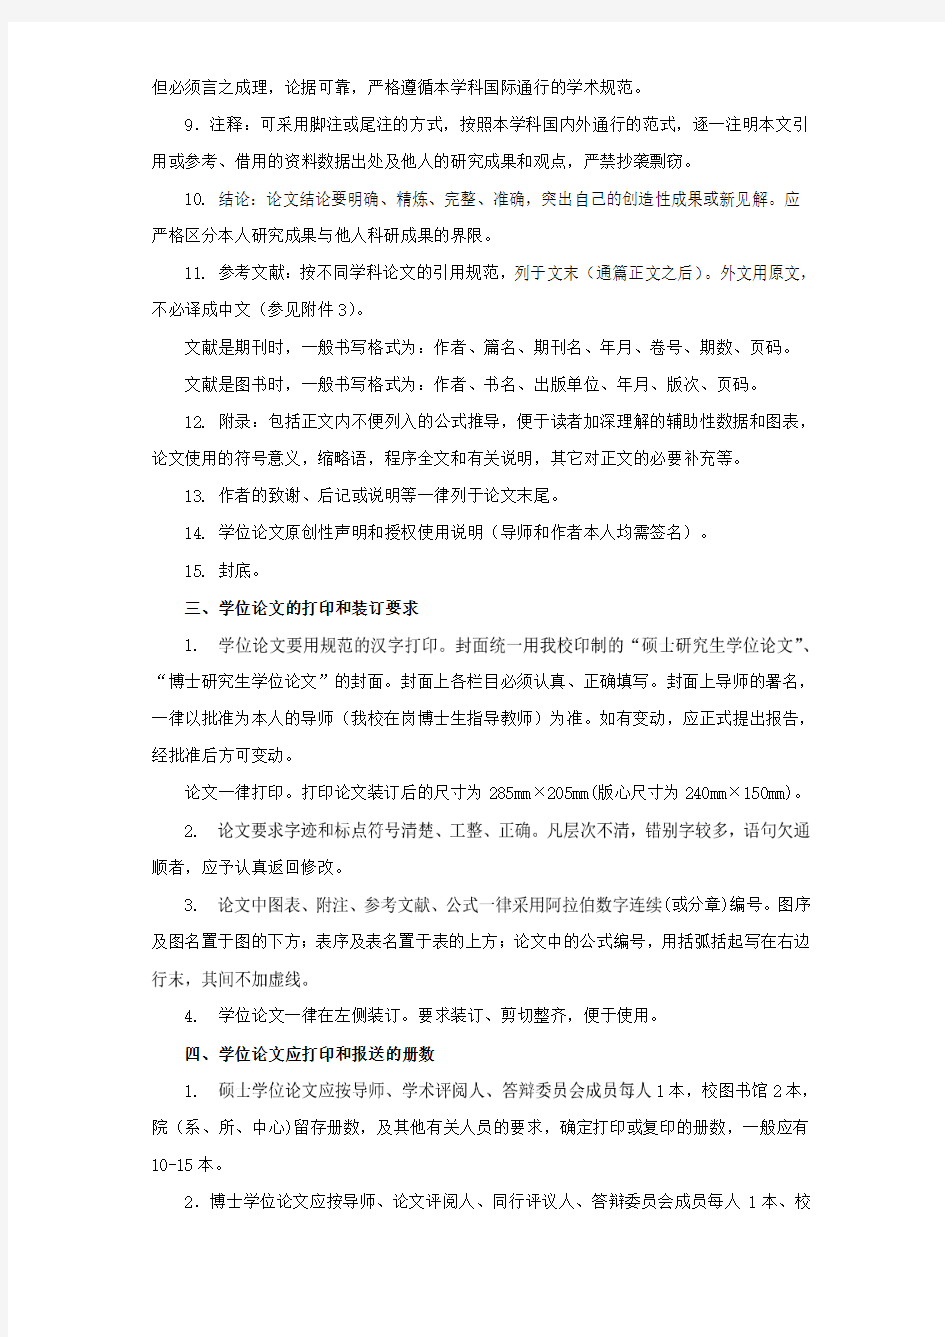 北京大学研究生学位论文的基本要求与书写格式 - 北京大学哲学系